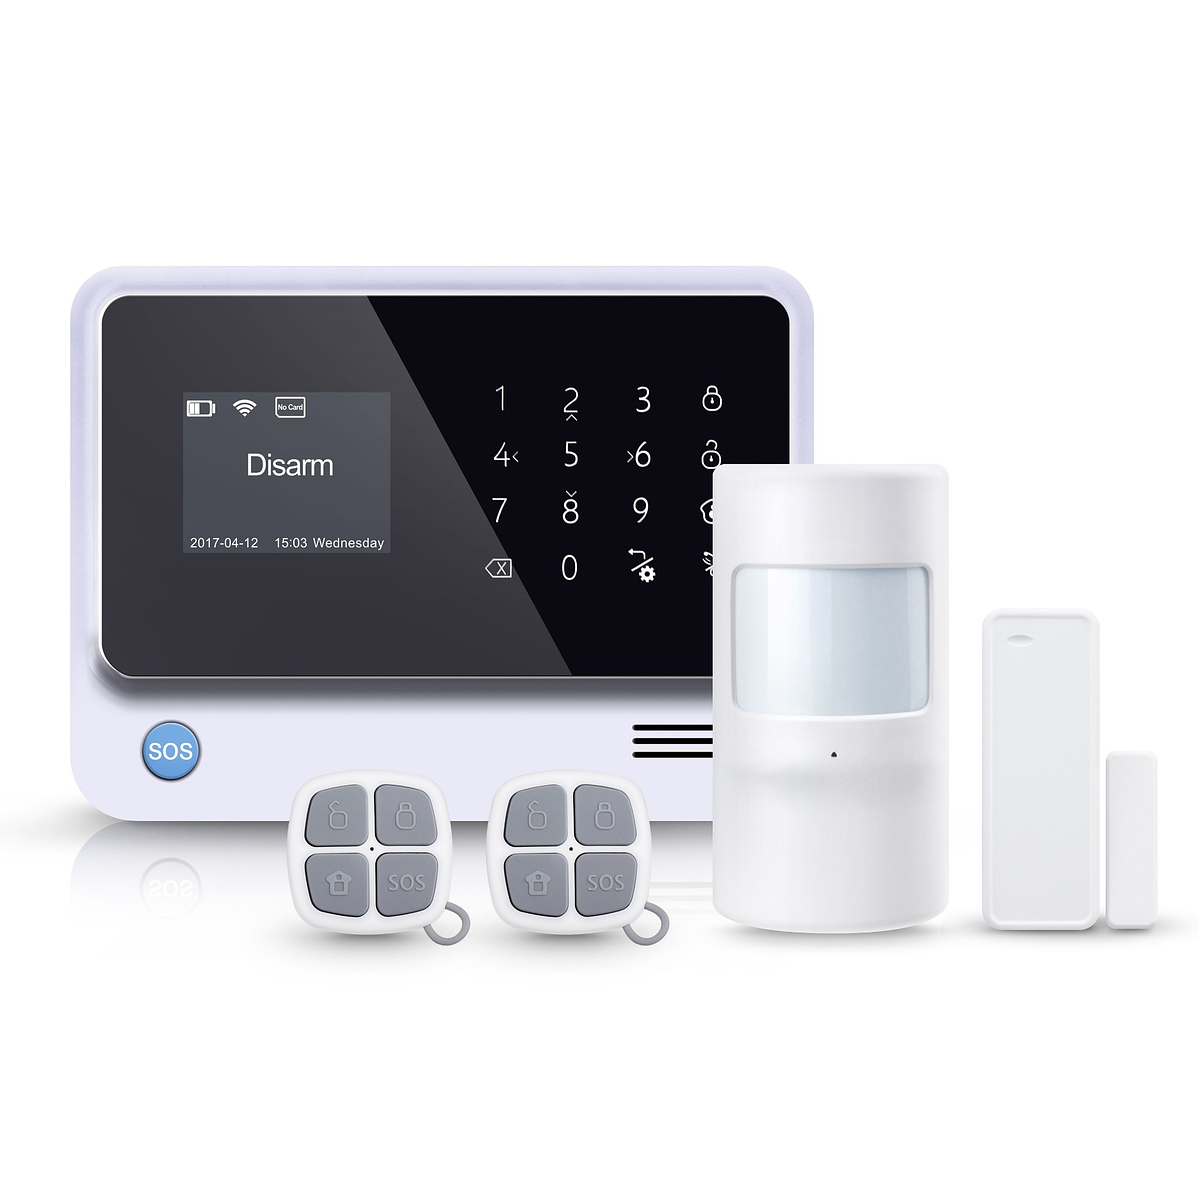 Sistema inteligente de alarma WiFi GSM GPRS seguridad alarmas de hogar,  Android + iOS seguridad hogar